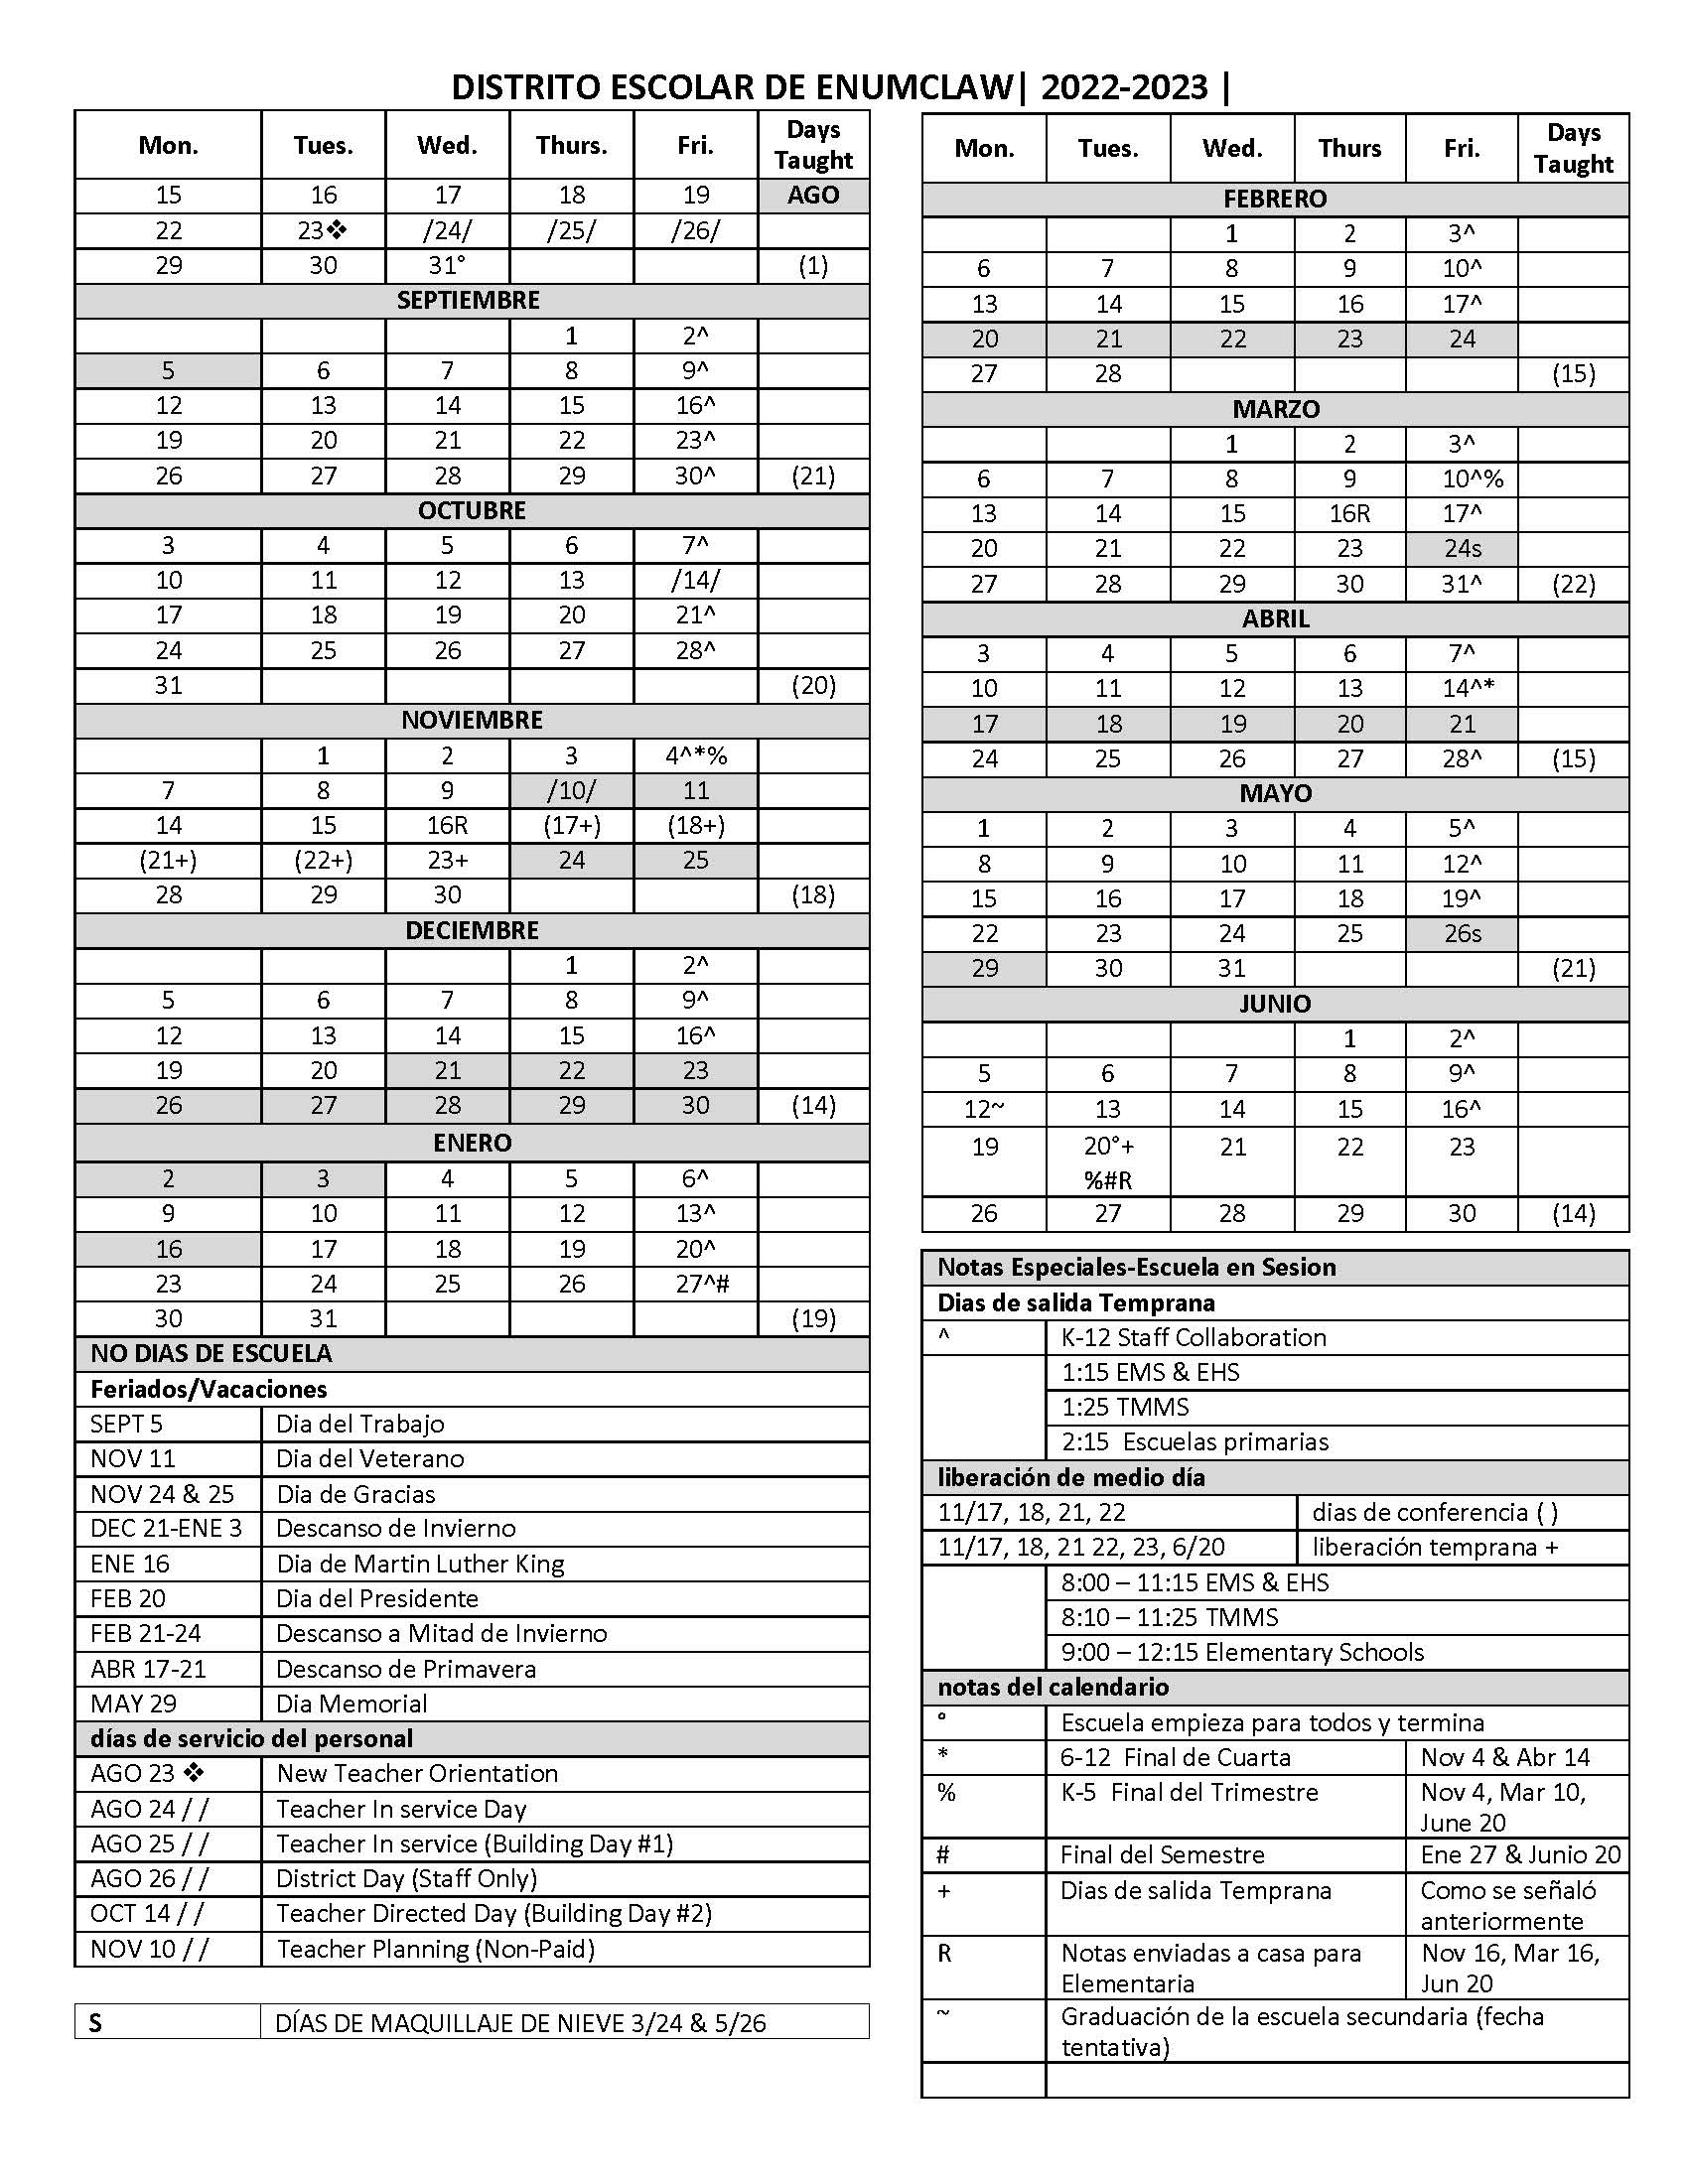 2022-23 School Calendar in Spanish